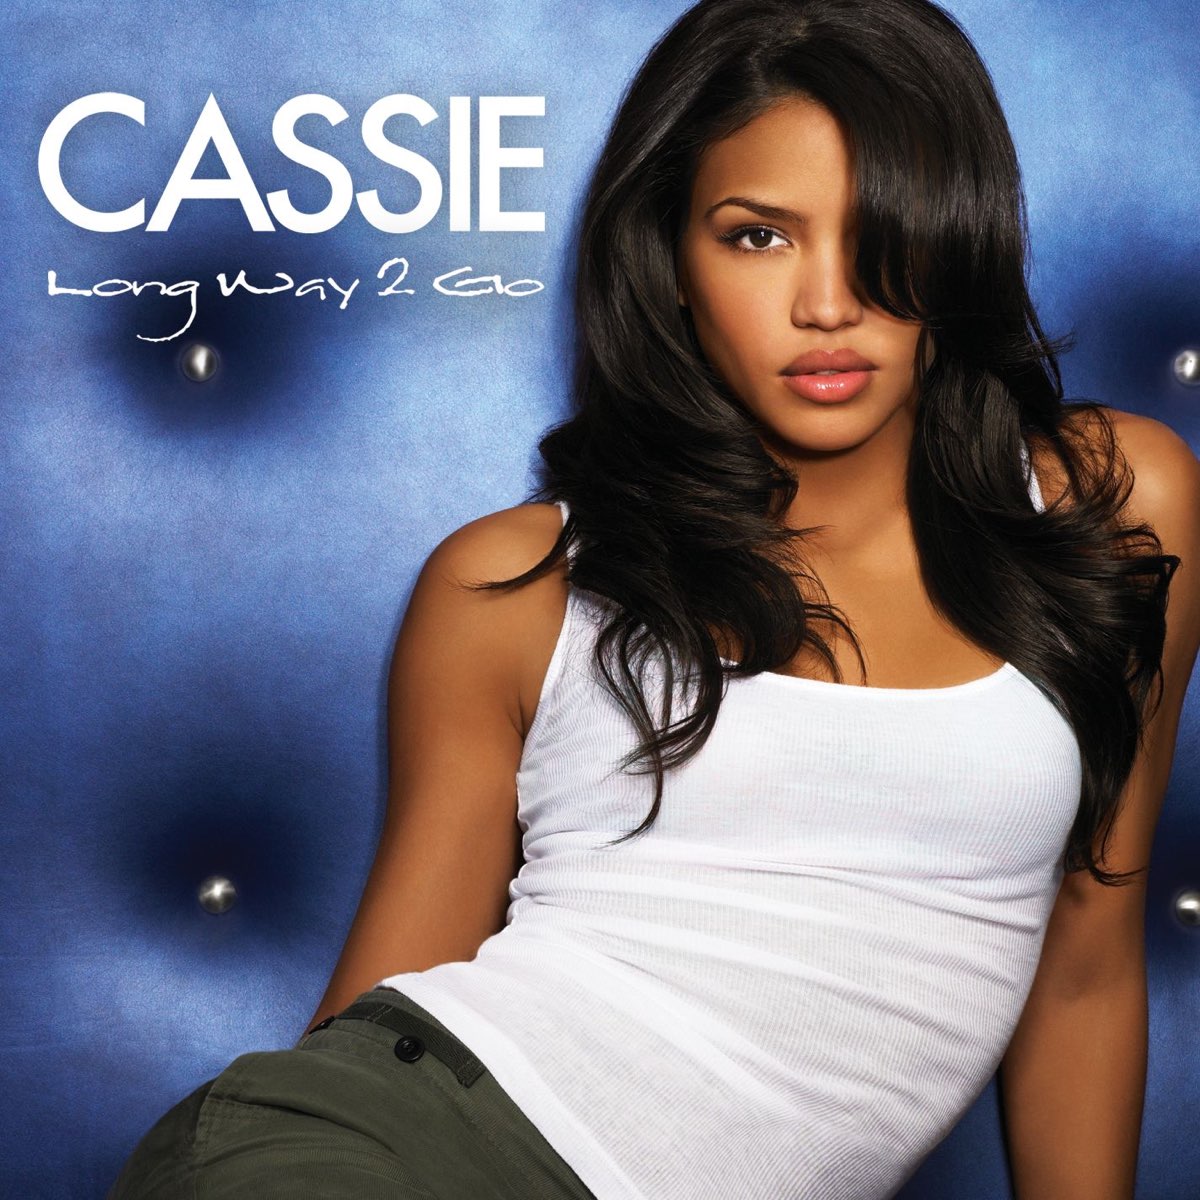 Cassie Long Way 2 Go cover artwork